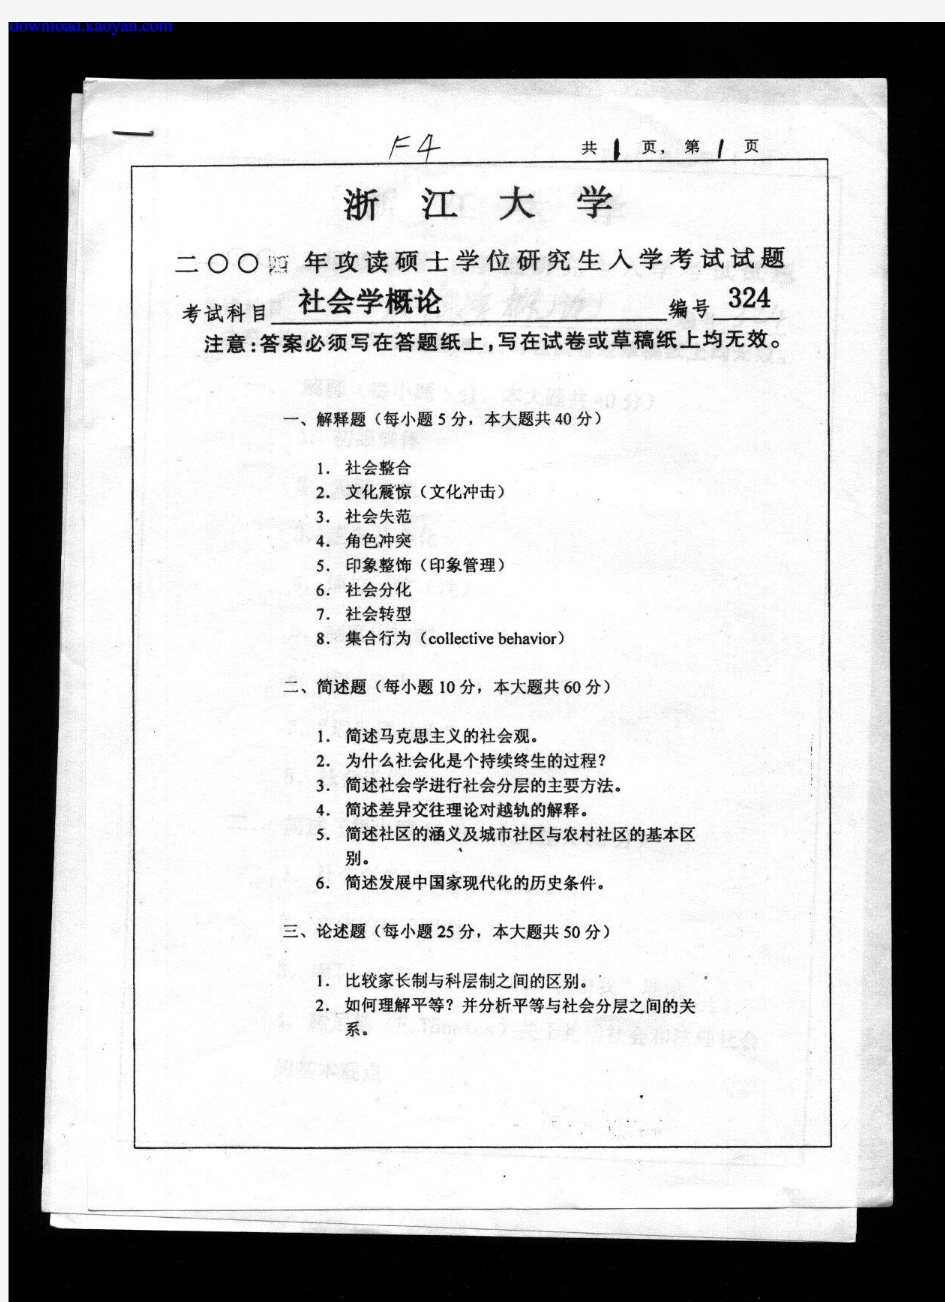 2004年浙江大学社会学概论考研试题